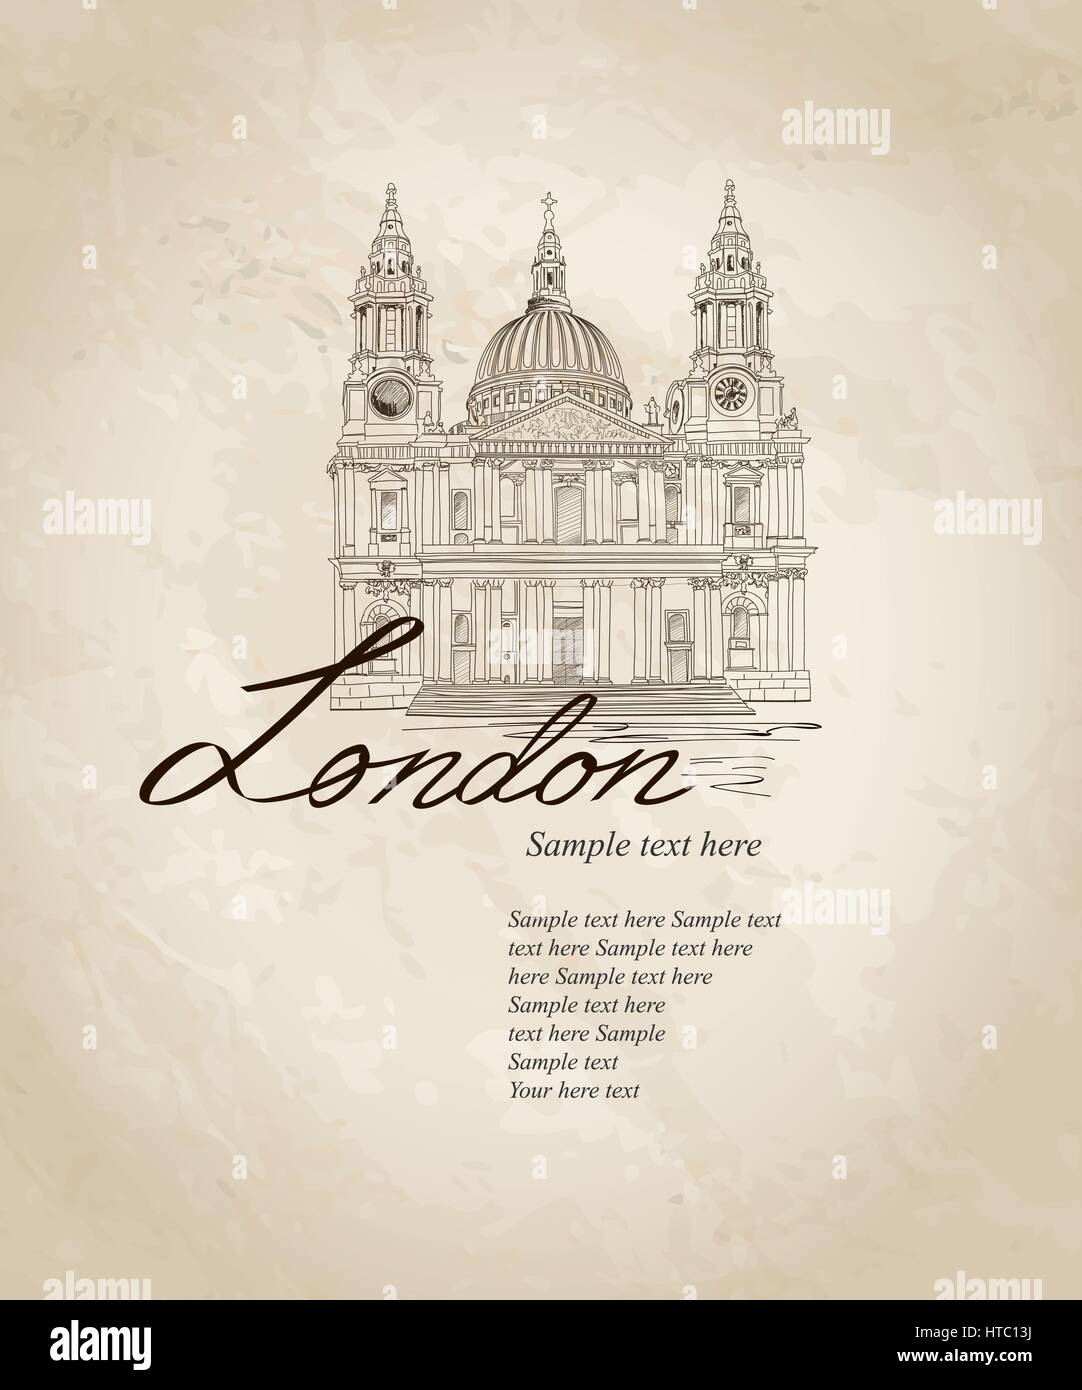 St. Paul Kathedrale, London, UK. Hand gezeichnet Abbildung. vector vintage Hintergrund. Stock Vektor